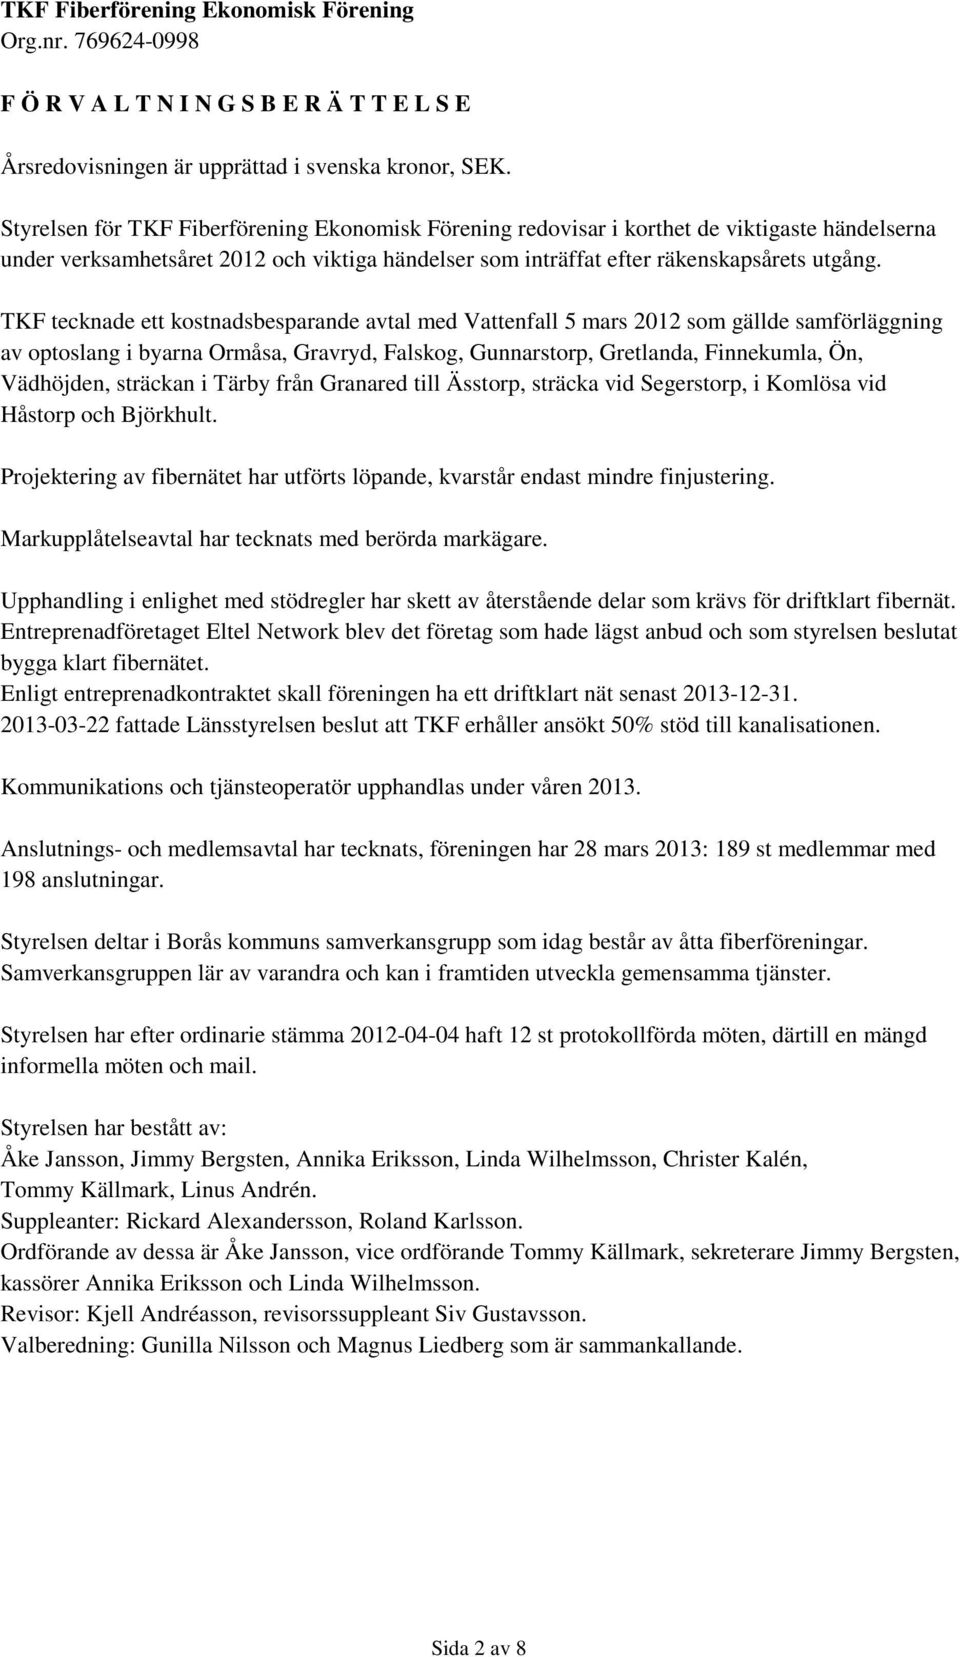 TKF tecknade ett kostnadsbesparande avtal med Vattenfall 5 mars 2012 som gällde samförläggning av optoslang i byarna Ormåsa, Gravryd, Falskog, Gunnarstorp, Gretlanda, Finnekumla, Ön, Vädhöjden,